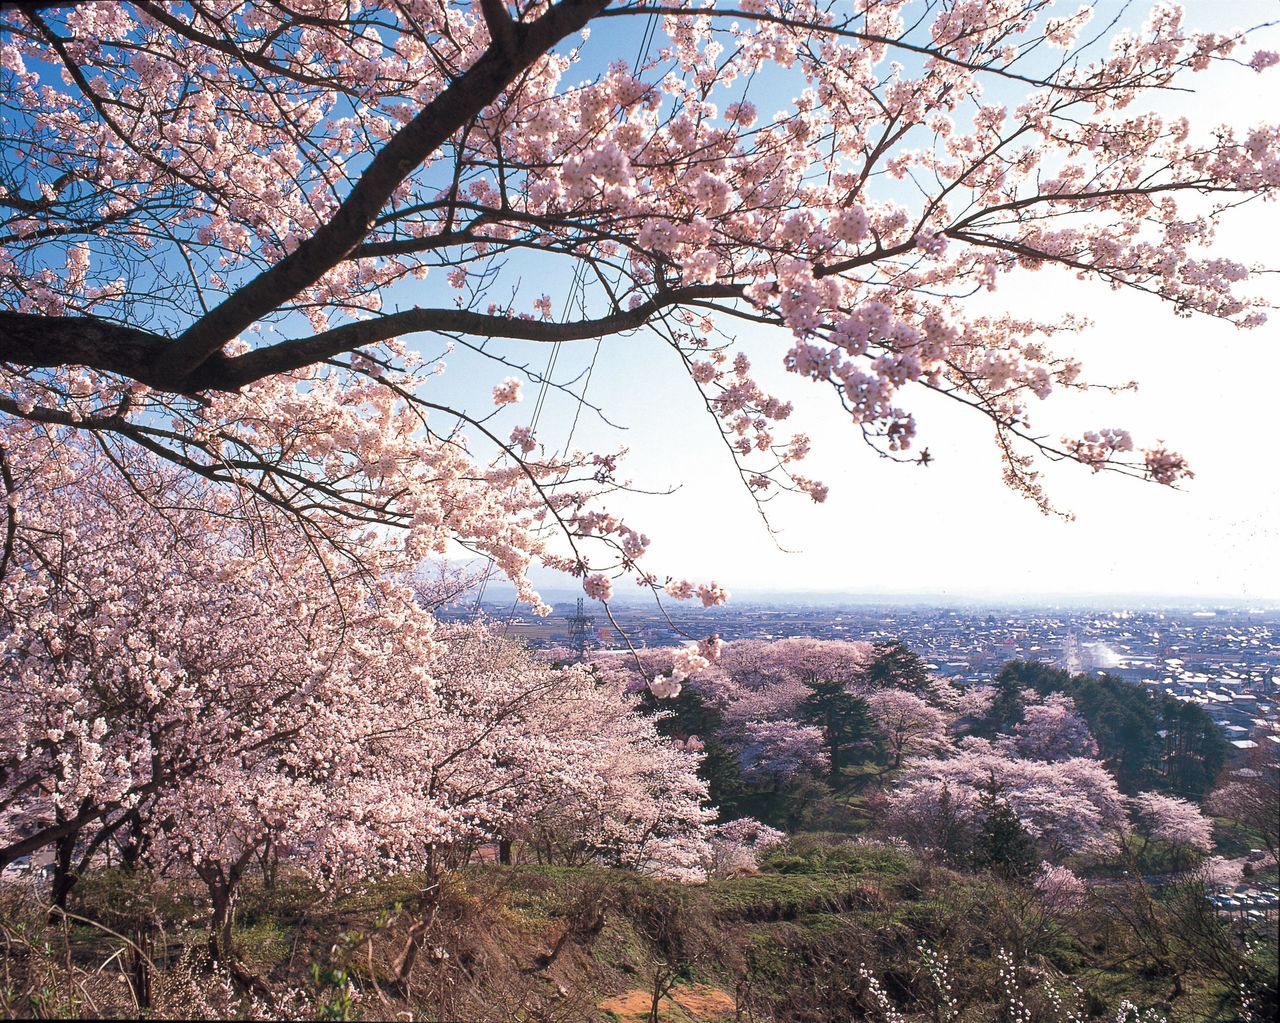 Los mil cerezos de Eboshiyama, desde donde se pueden contemplar también vistas de Akayu Onsen (imagen cortesía de la Asociación de Turismo y Productos Locales de Yamagata). 